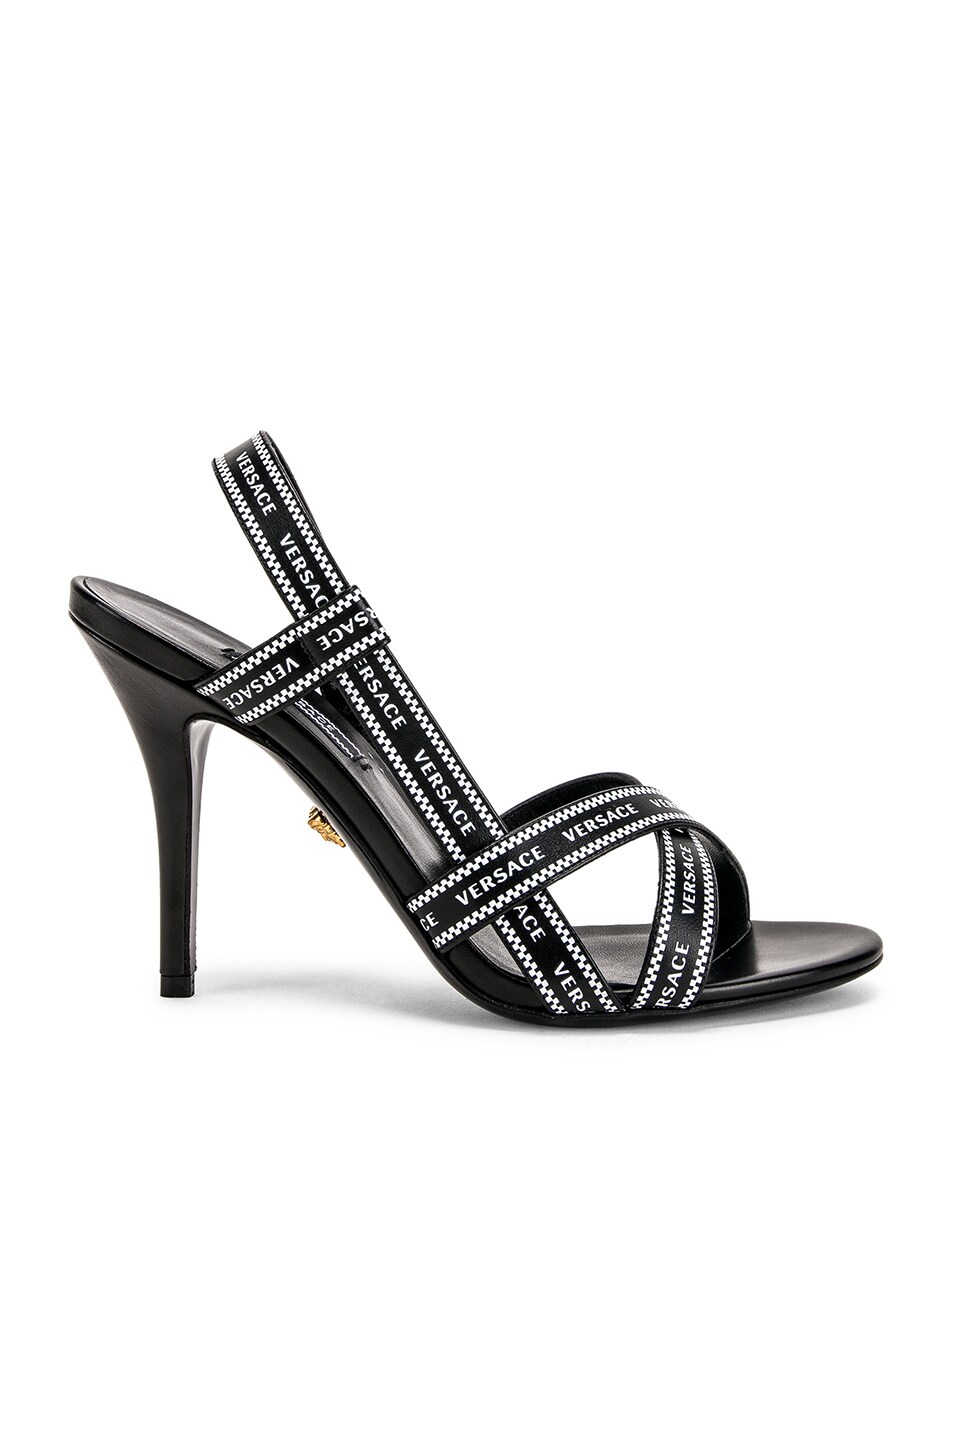 versace logo heels